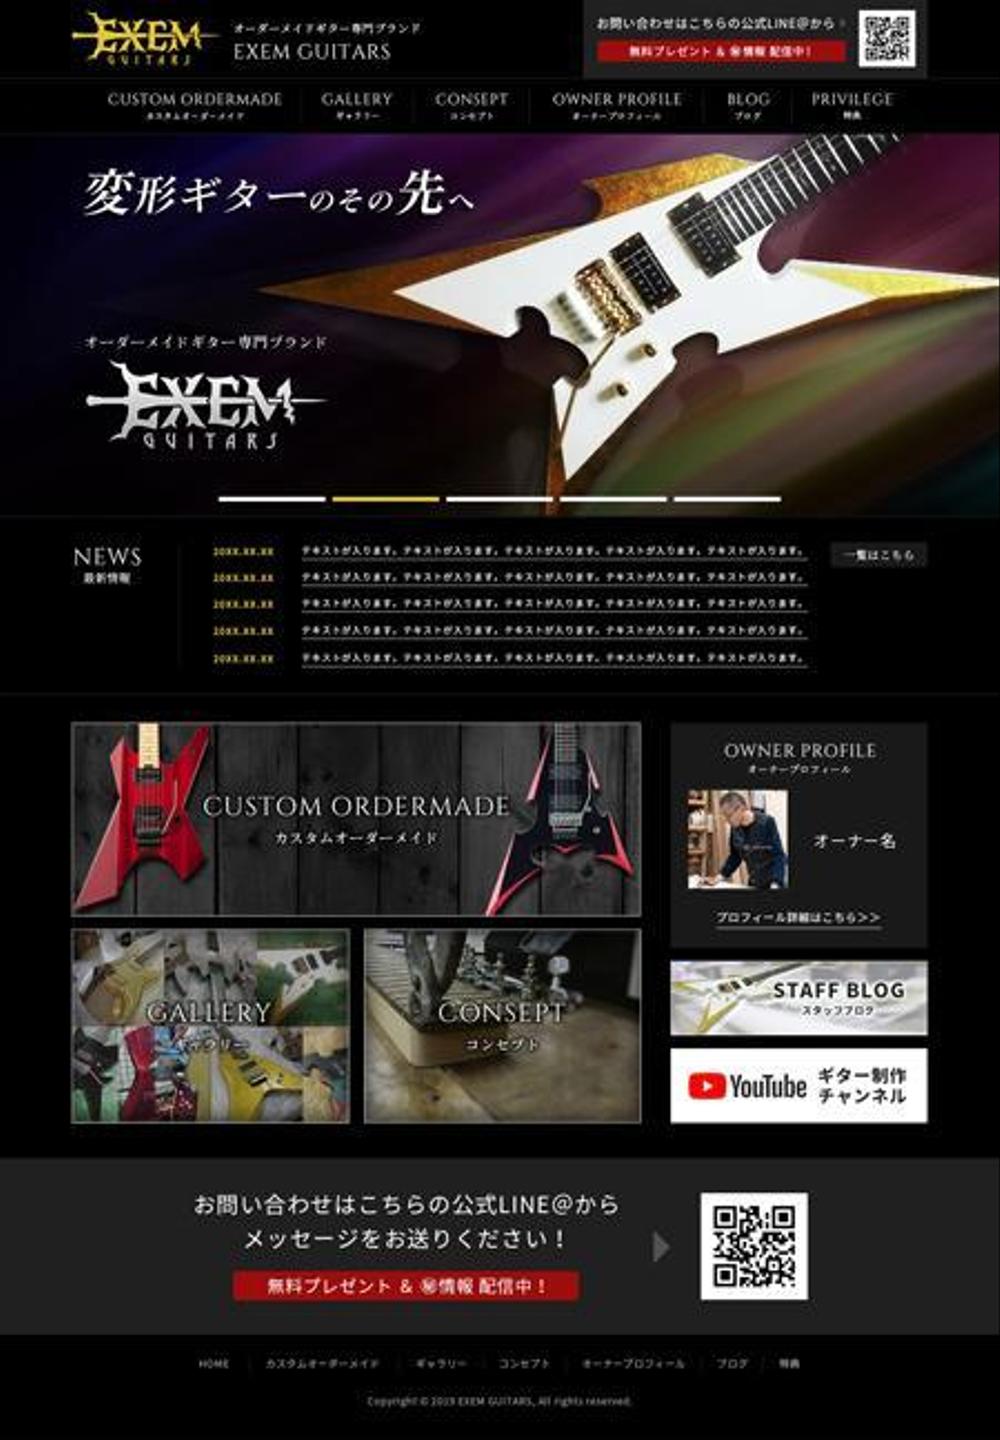 【継続あり】エレキギターブランド EXEM GUITAR 公式サイトのトップページデザイン